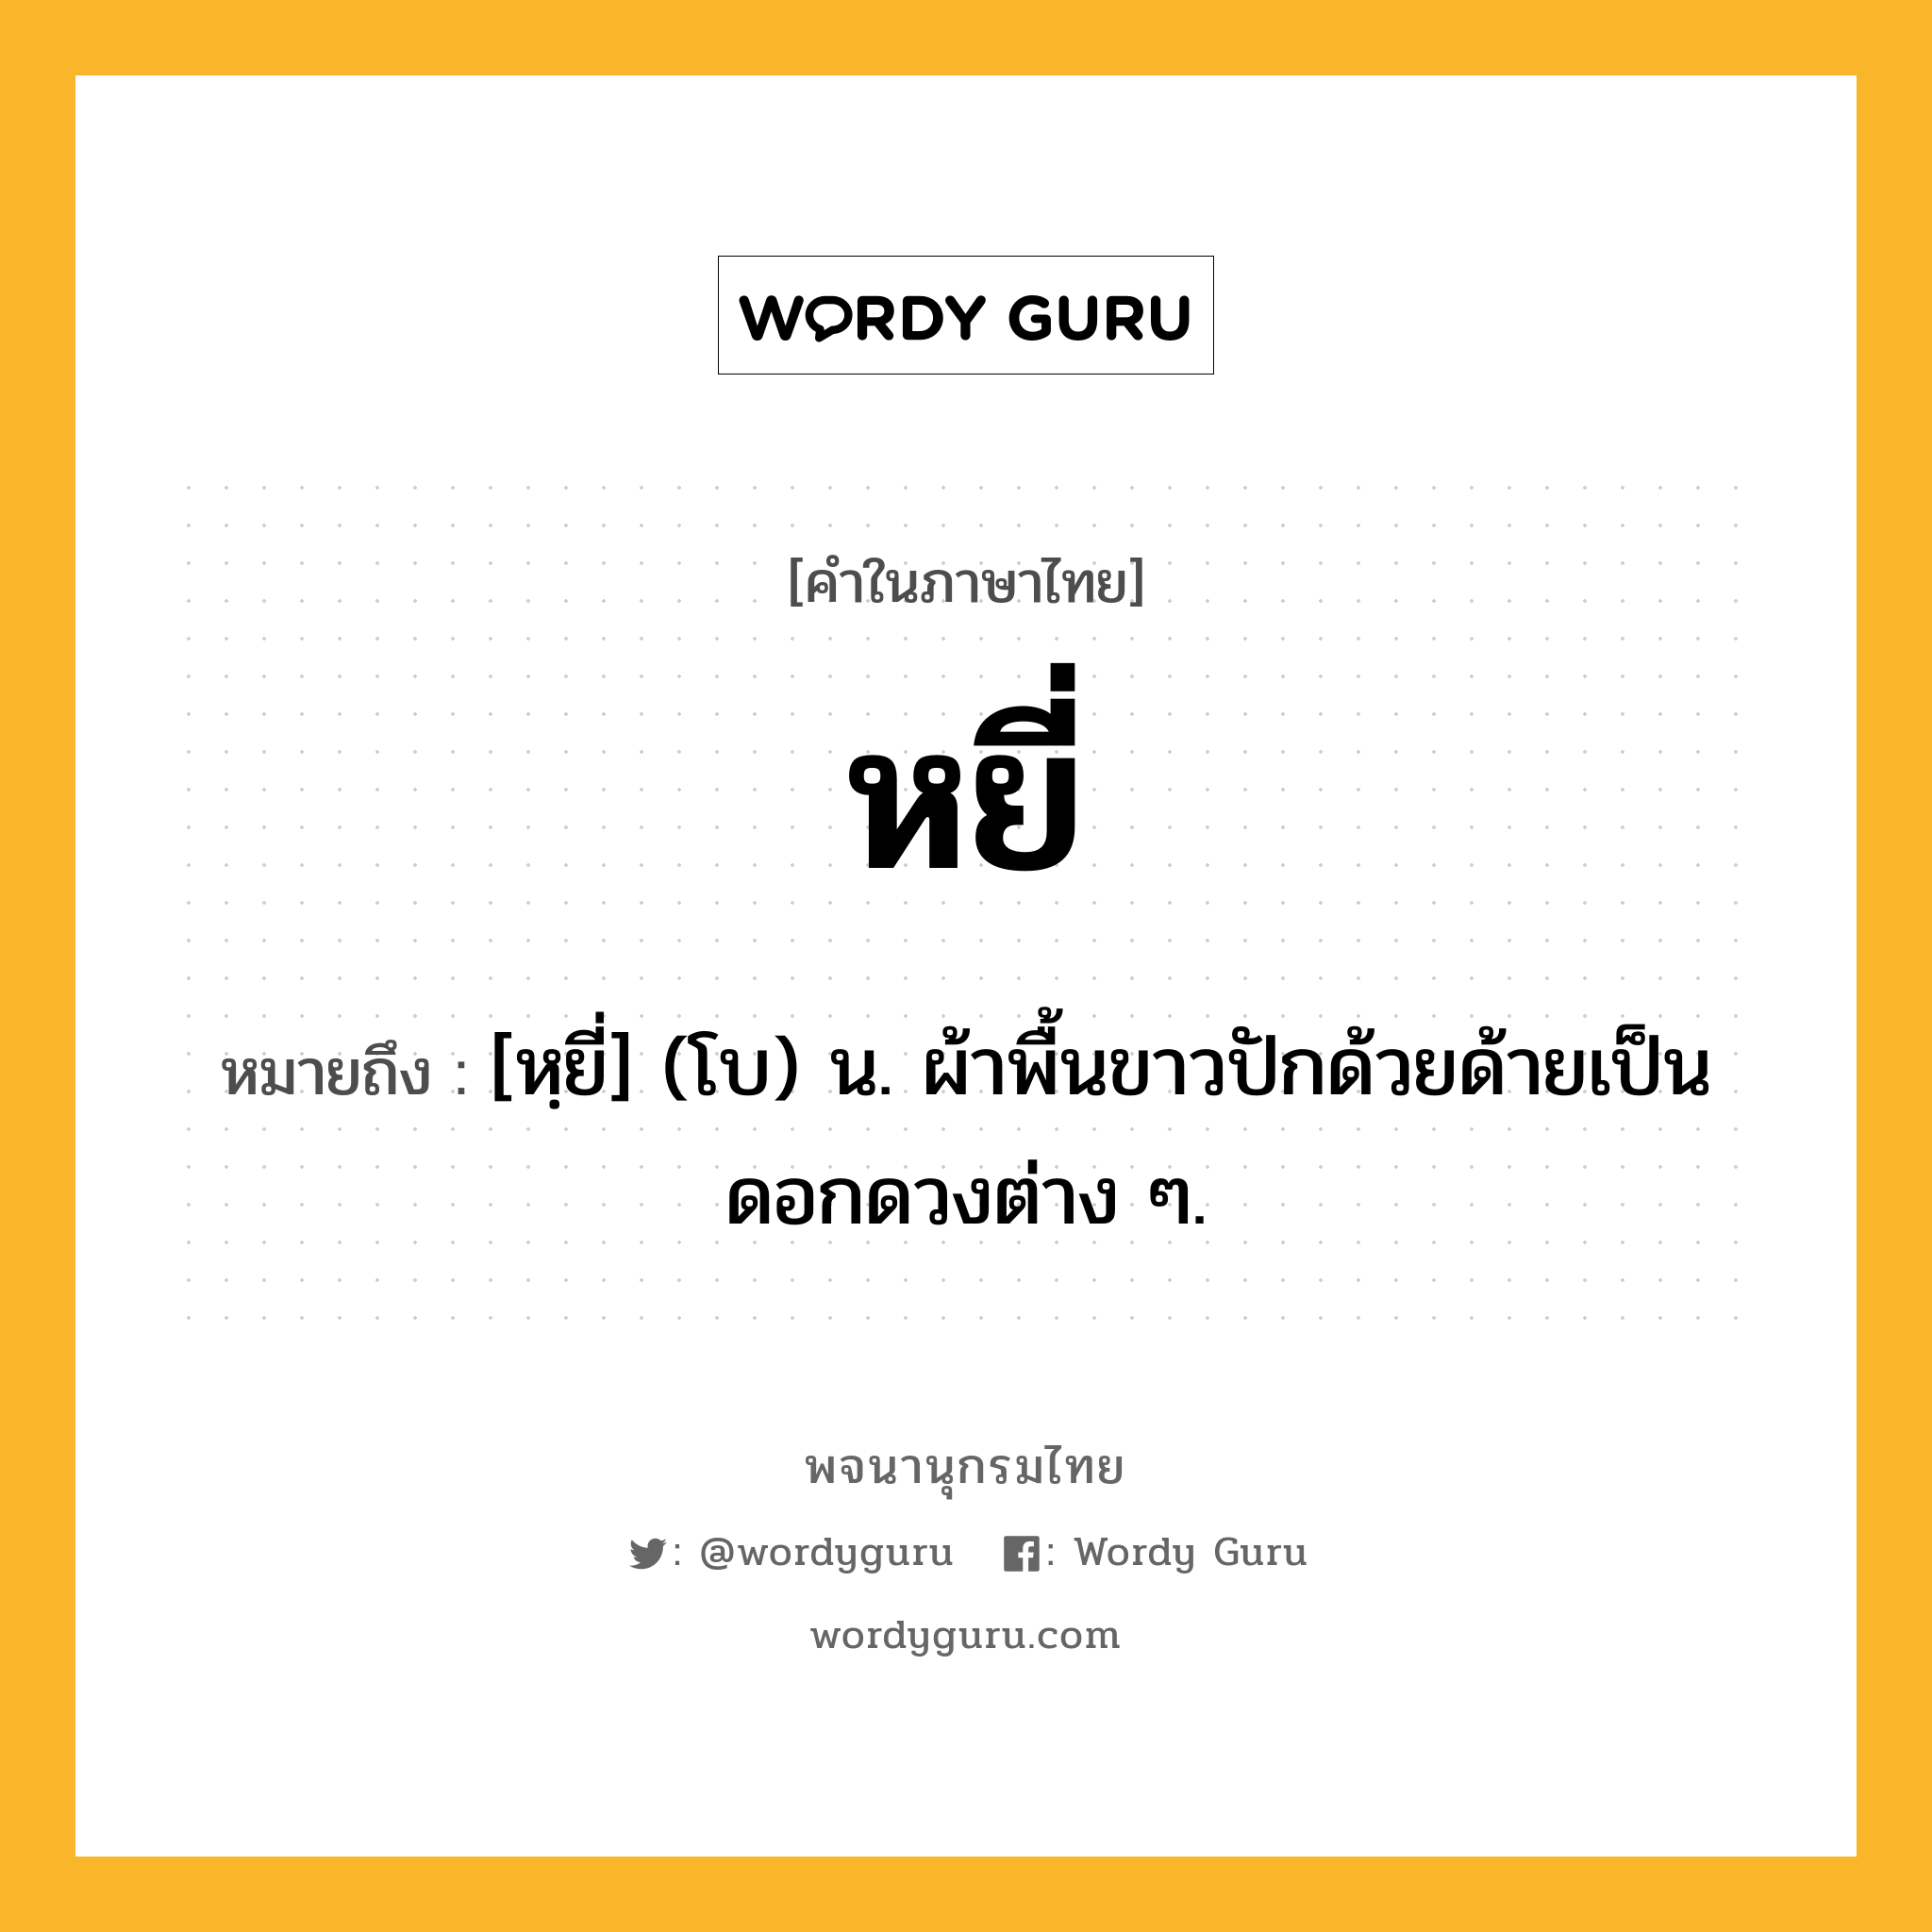 หยี่ หมายถึงอะไร?, คำในภาษาไทย หยี่ หมายถึง [หฺยี่] (โบ) น. ผ้าพื้นขาวปักด้วยด้ายเป็นดอกดวงต่าง ๆ.